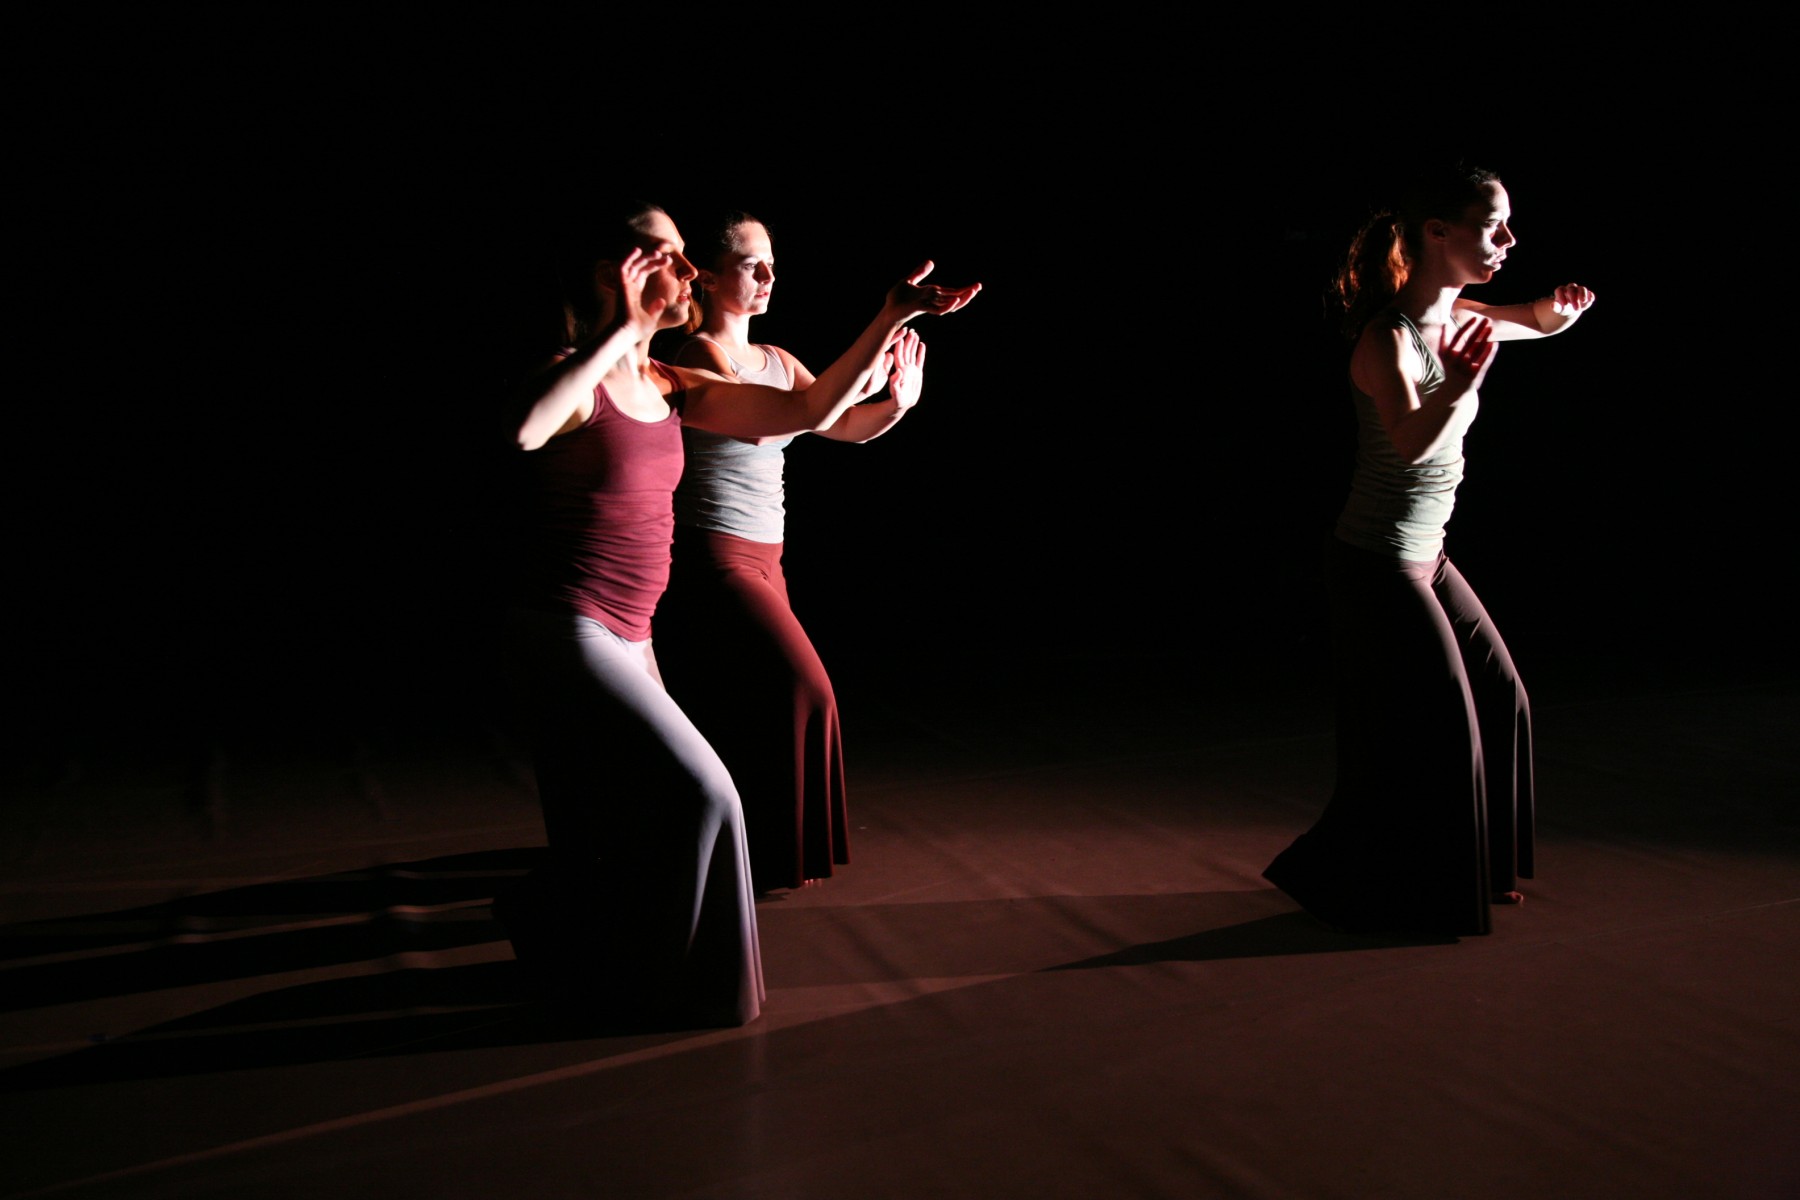 aAAAAAAAncient SpringsaAAAAAA choreographed by Tina Croll.  Dancers:  Michelle Gilligan (left), Erin Pellecchia (center), Michelle Durante (right)